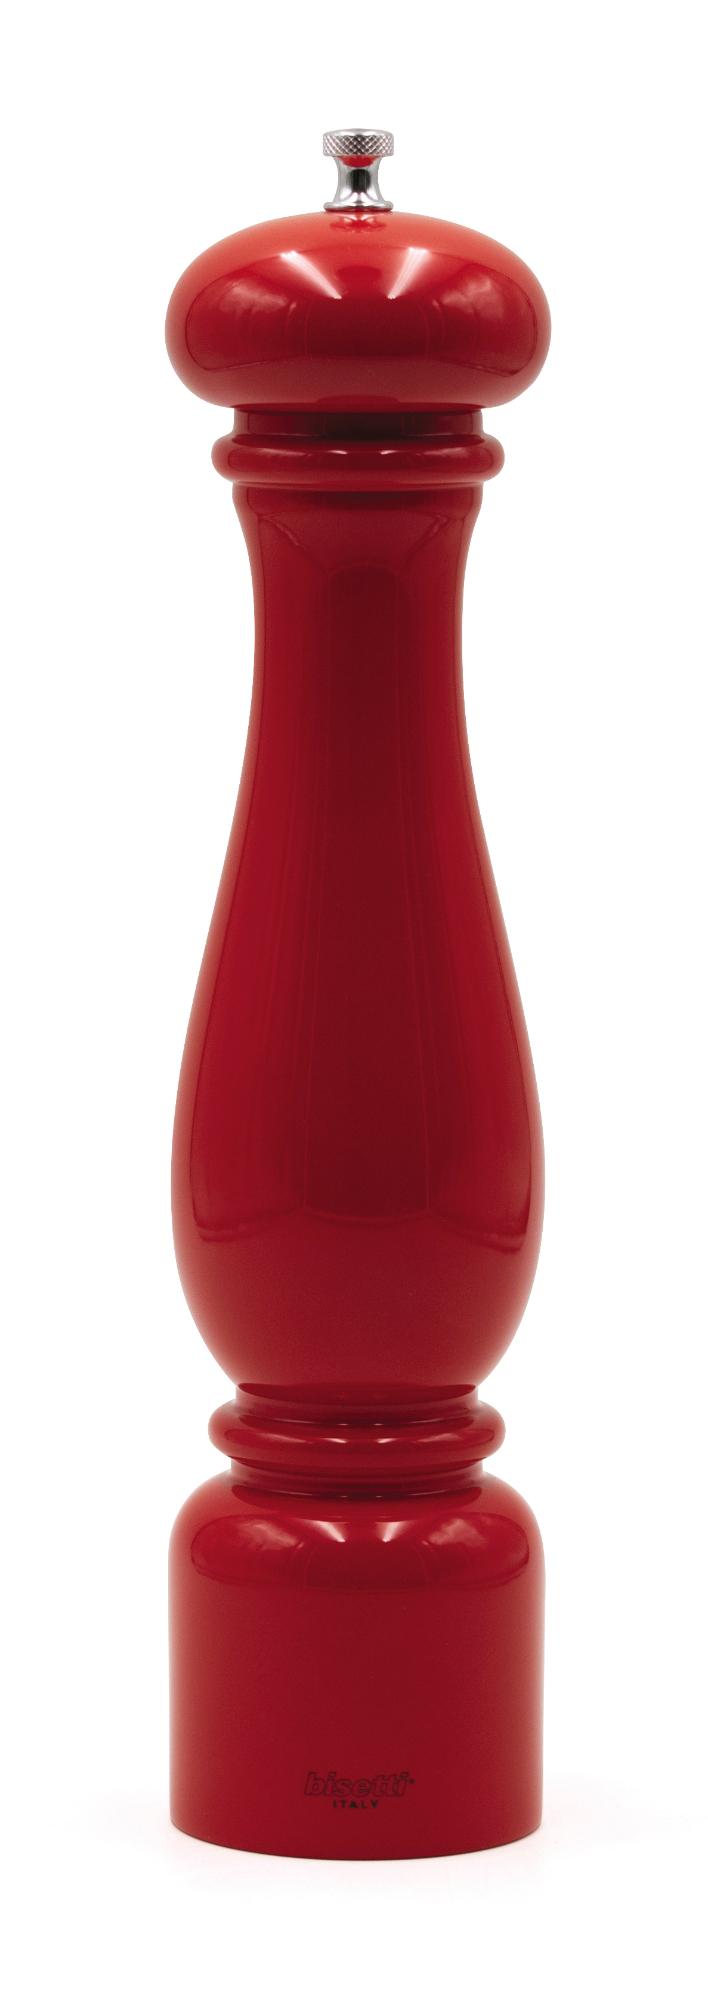 Firenze pepper mill, red, 320mm